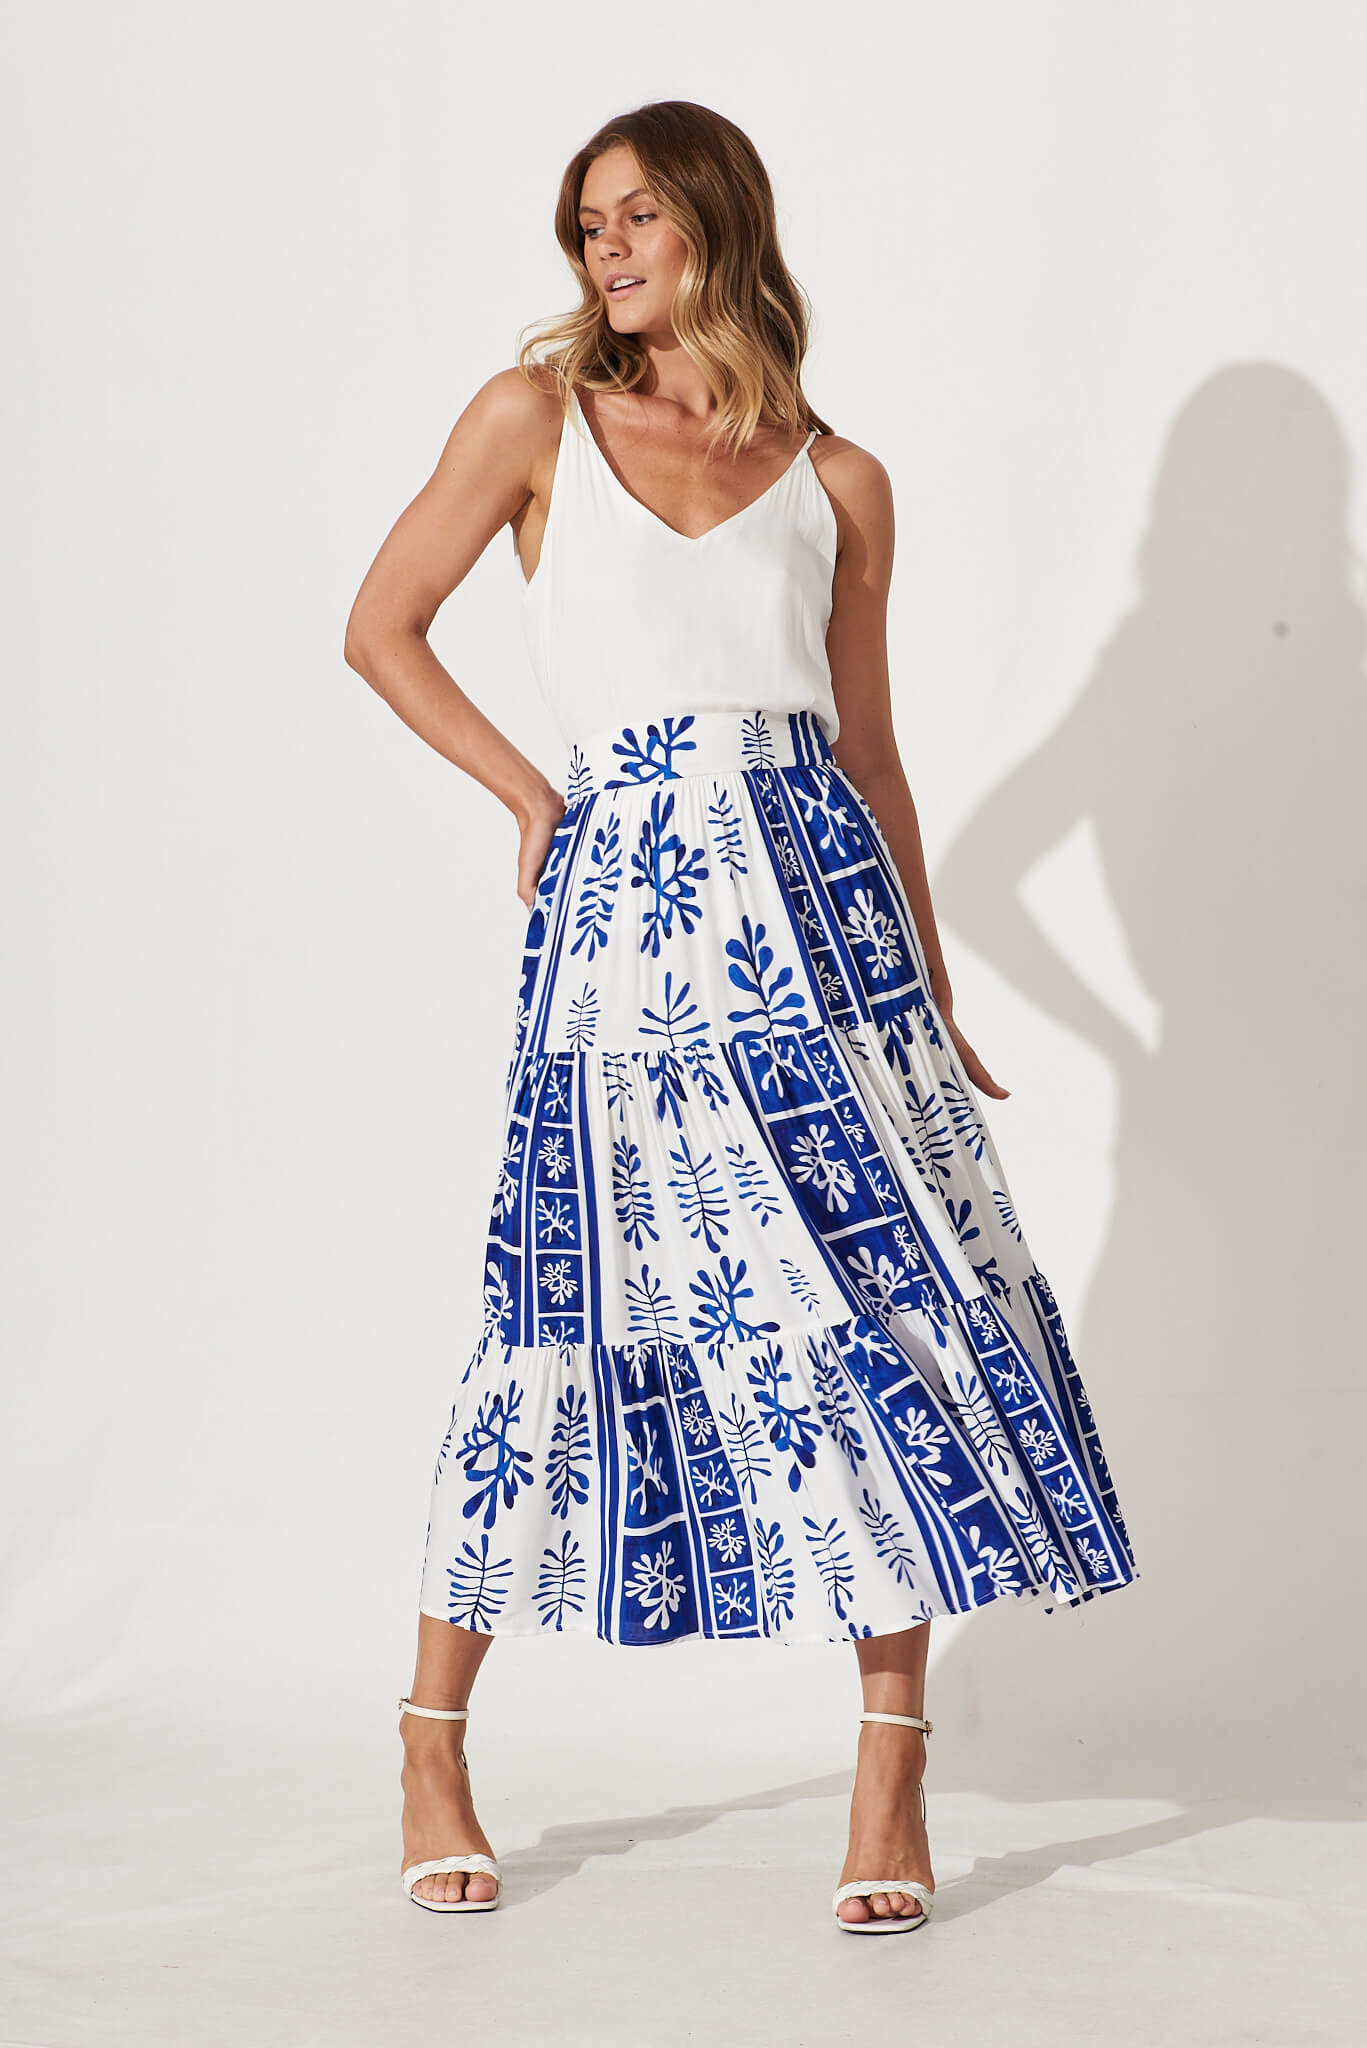 Wanderlust Maxi Skirt In Cobalt With White Print - full length